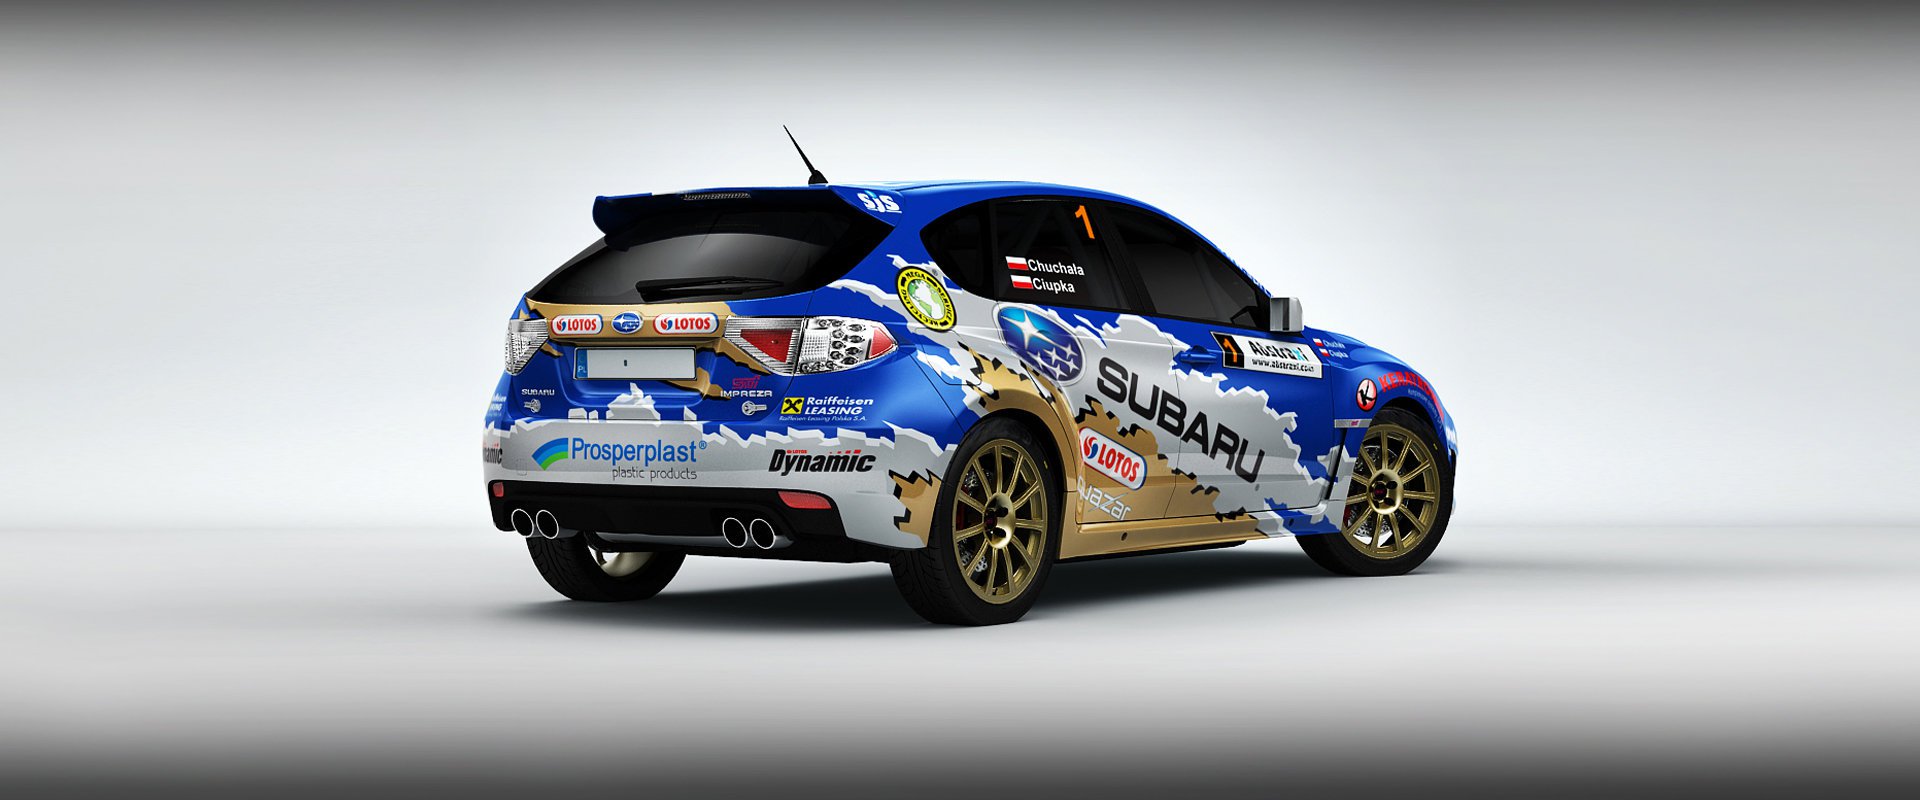 Subaru Poland Rally Team #3